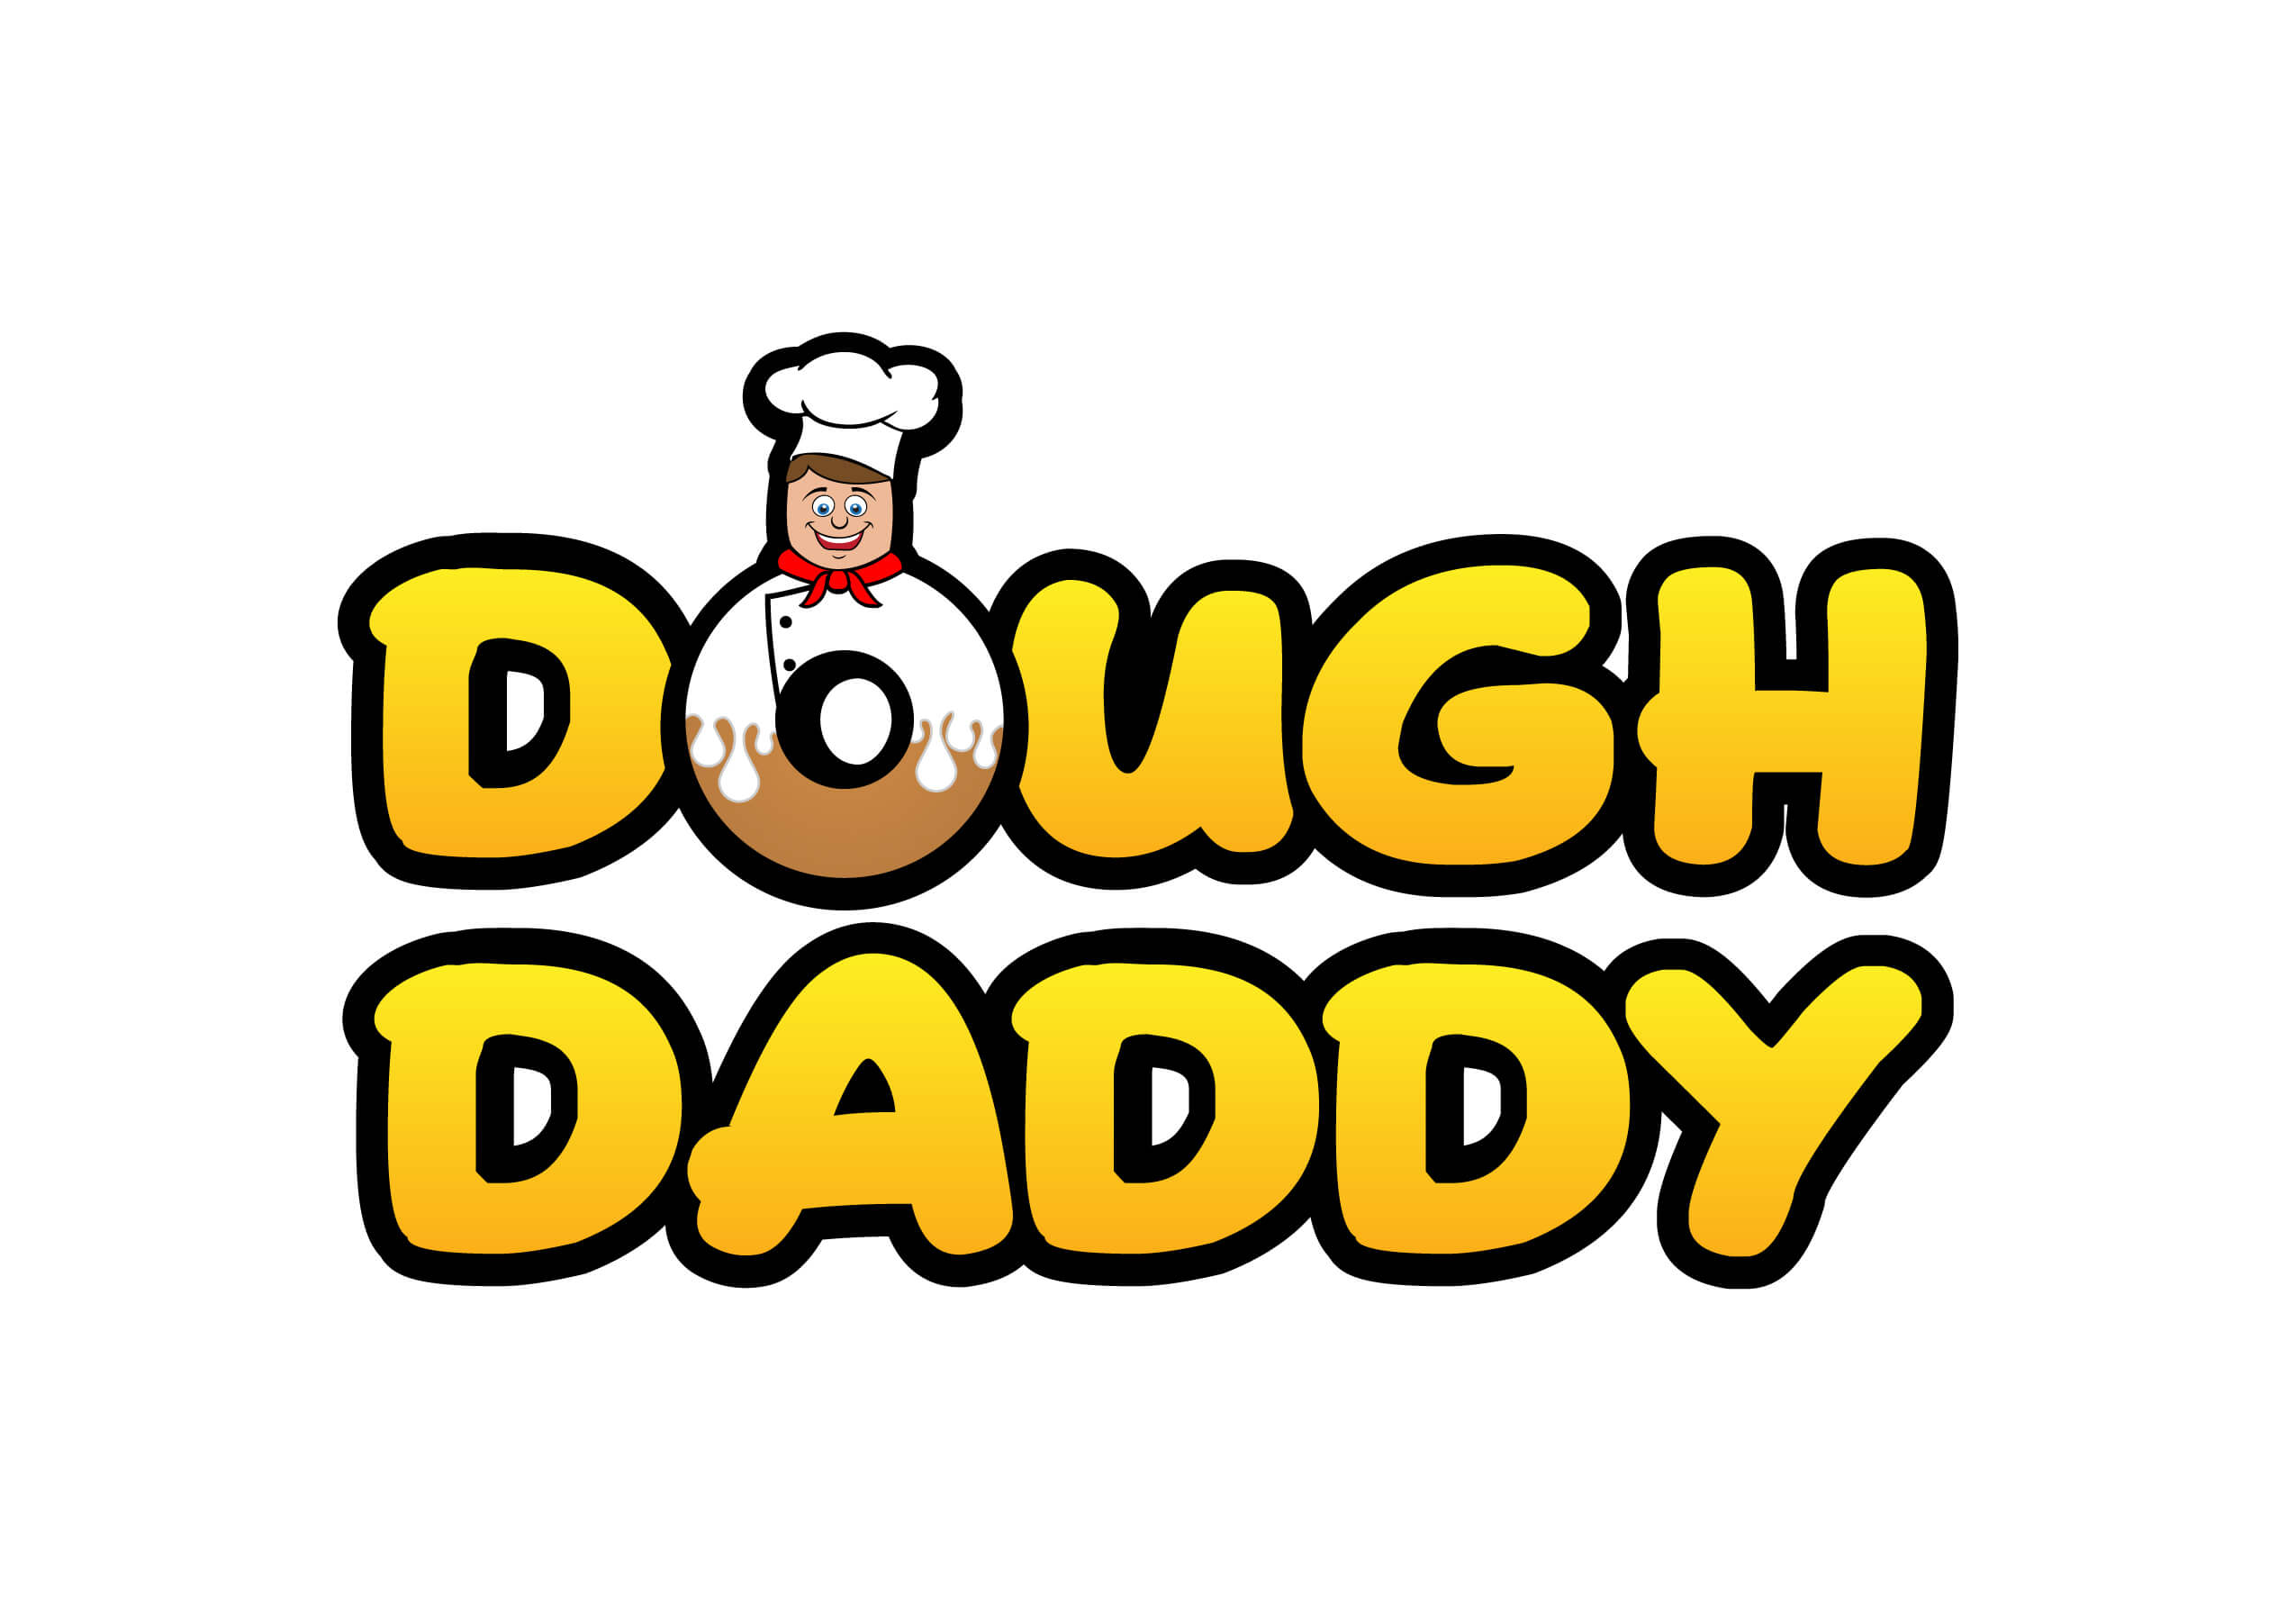 Dough Daddy logo